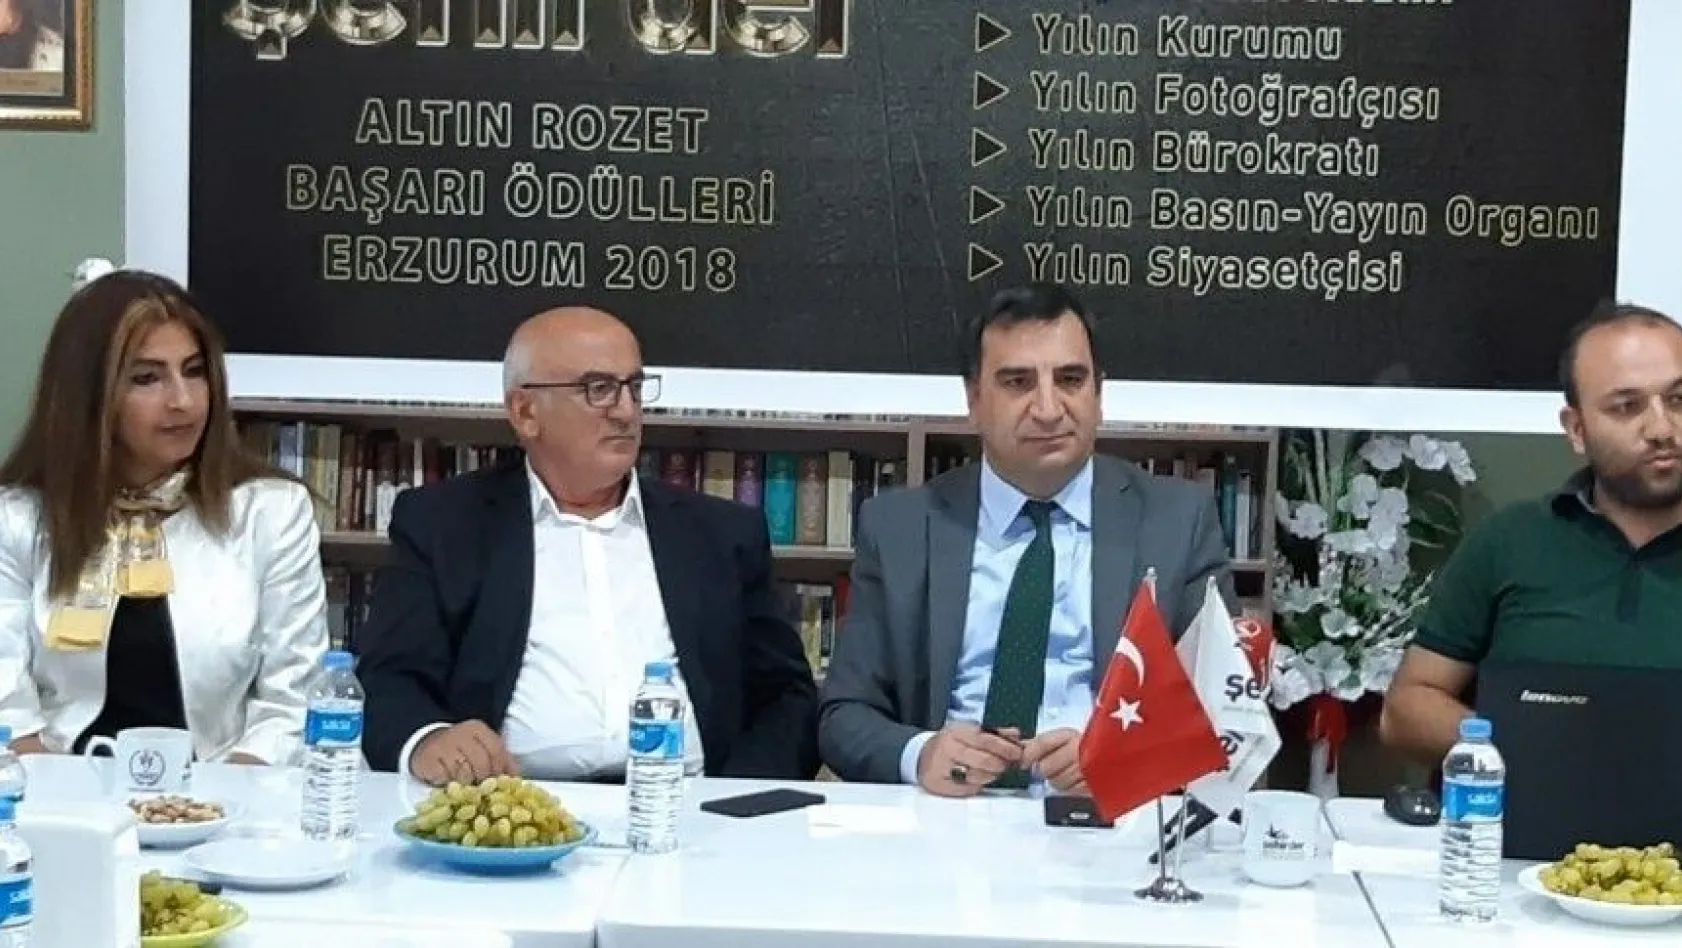 ŞEHİRDER anketi Erzurum'da halkın takdirini ortaya koyuyor
